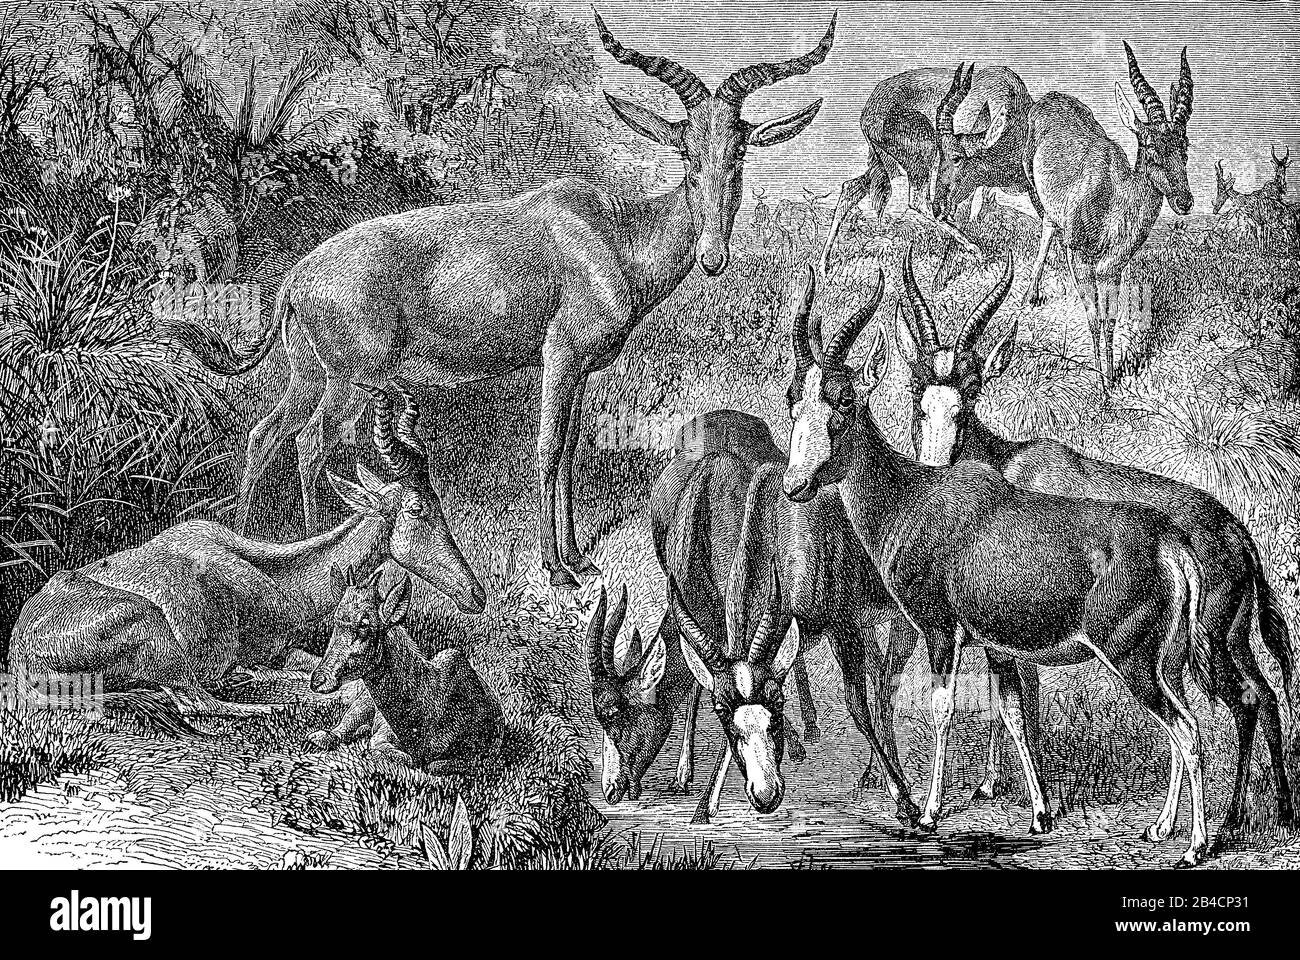 Paysage sauvage avec un troupeau d'alcelaphes africains avec des cornes tordues et spirales Banque D'Images